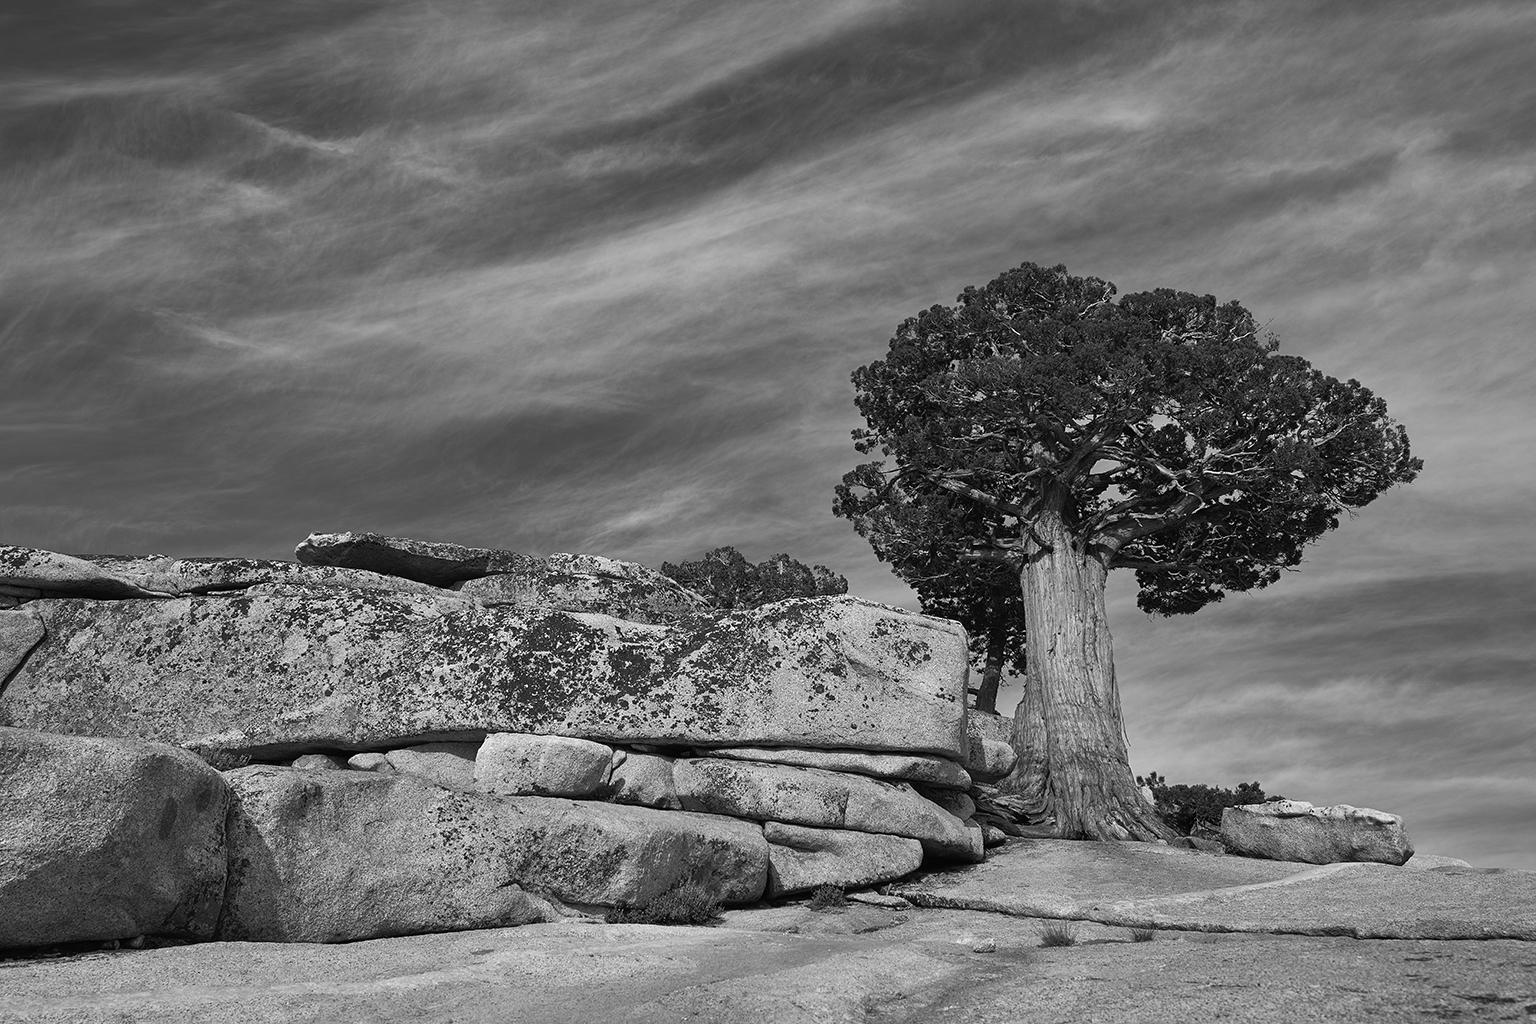 Aus einer Serie großformatiger Schwarz-Weiß-Fotografien, die die uralte Flora und das dramatische Arboretum der weiten Berglandschaften der kalifornischen Sierra Nevada einfangen, eine Hommage an den Fotografiepionier und Naturschützer Ansel